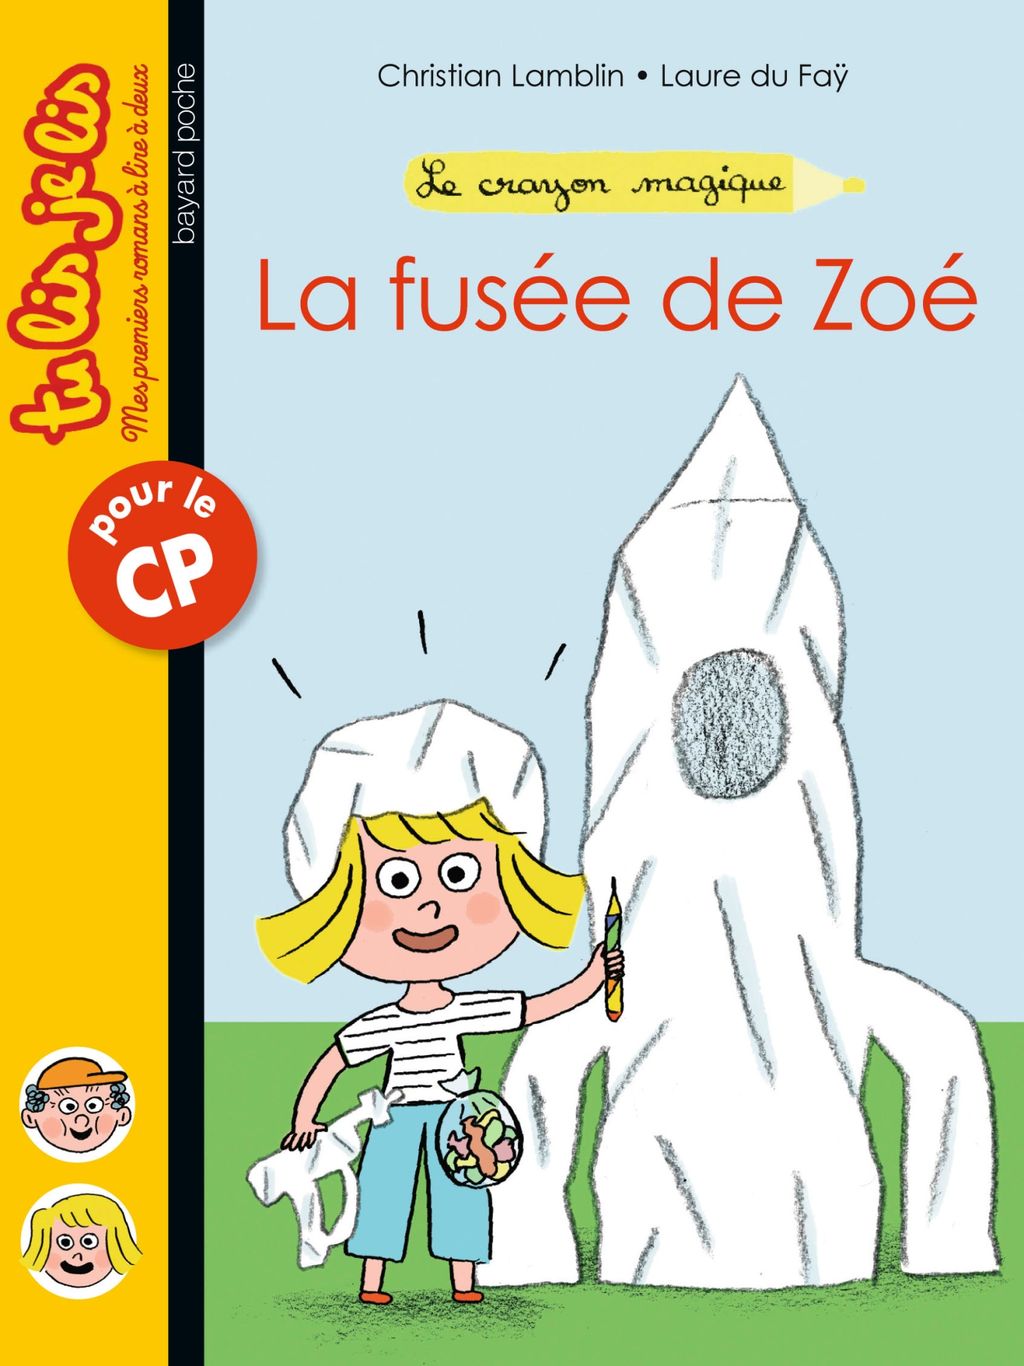 « La fusée de Zoé » cover